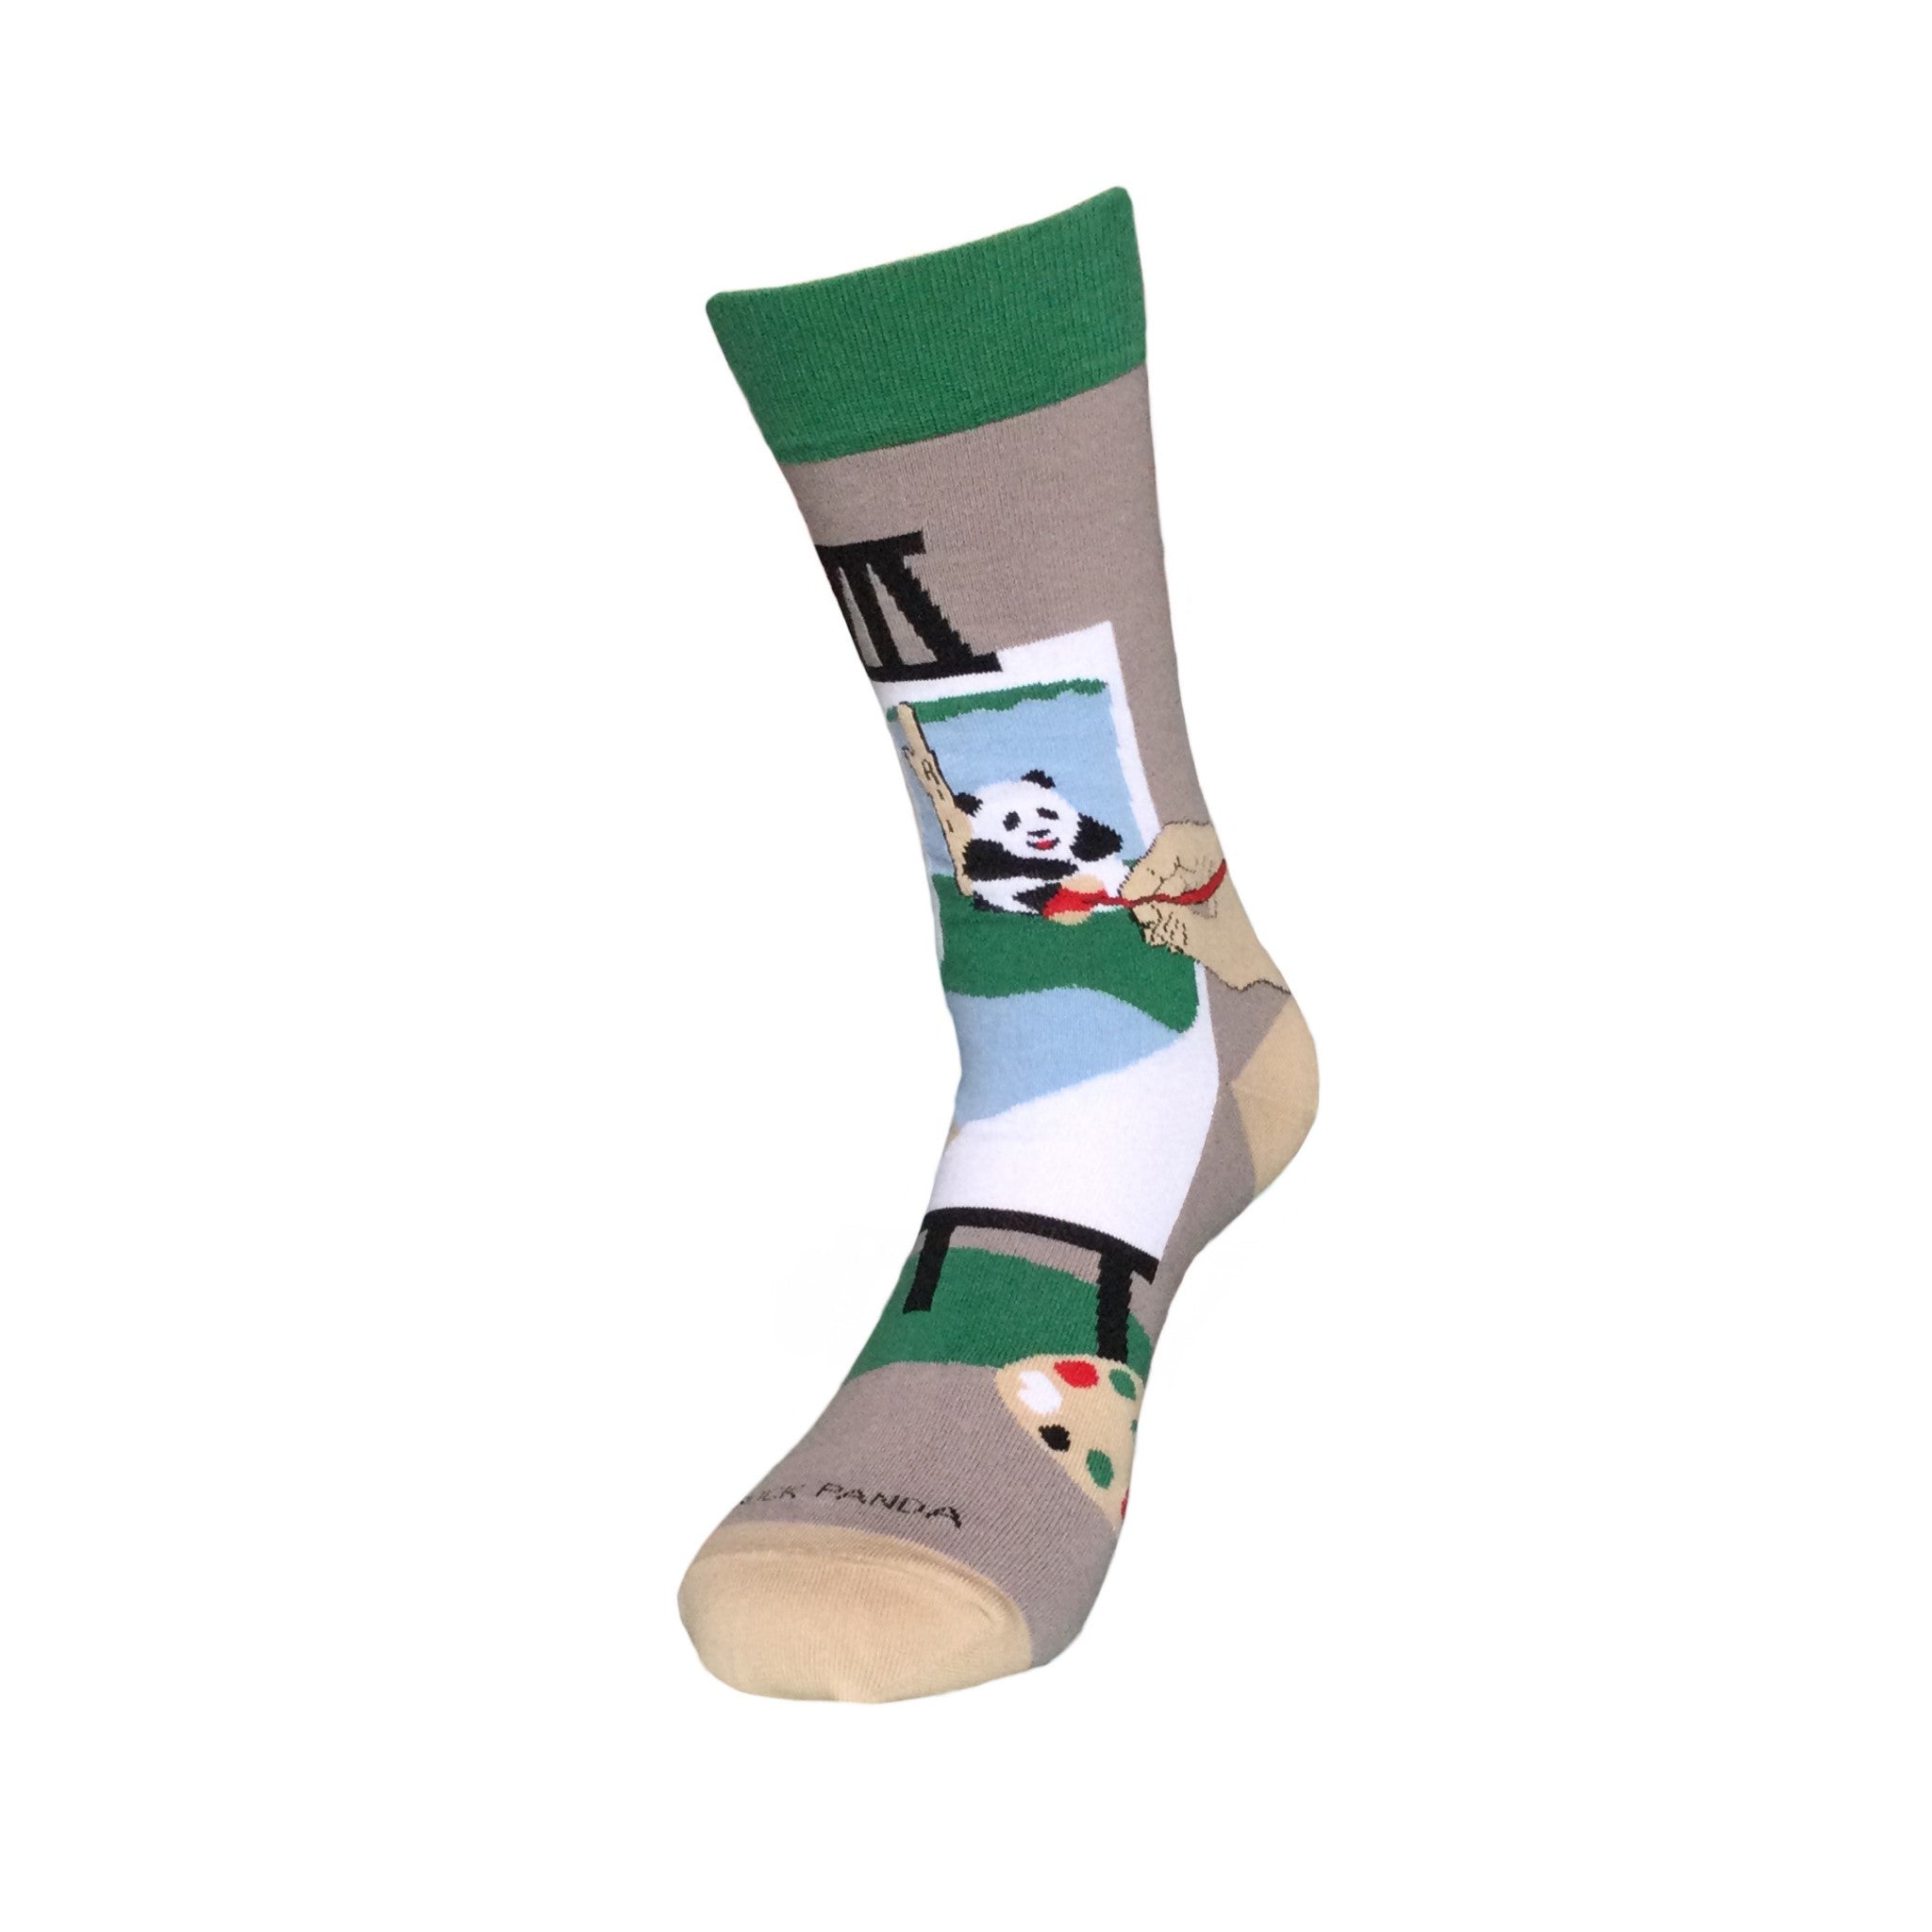 Panda Art on an Easel Socks - The Best Art Sock Ever!